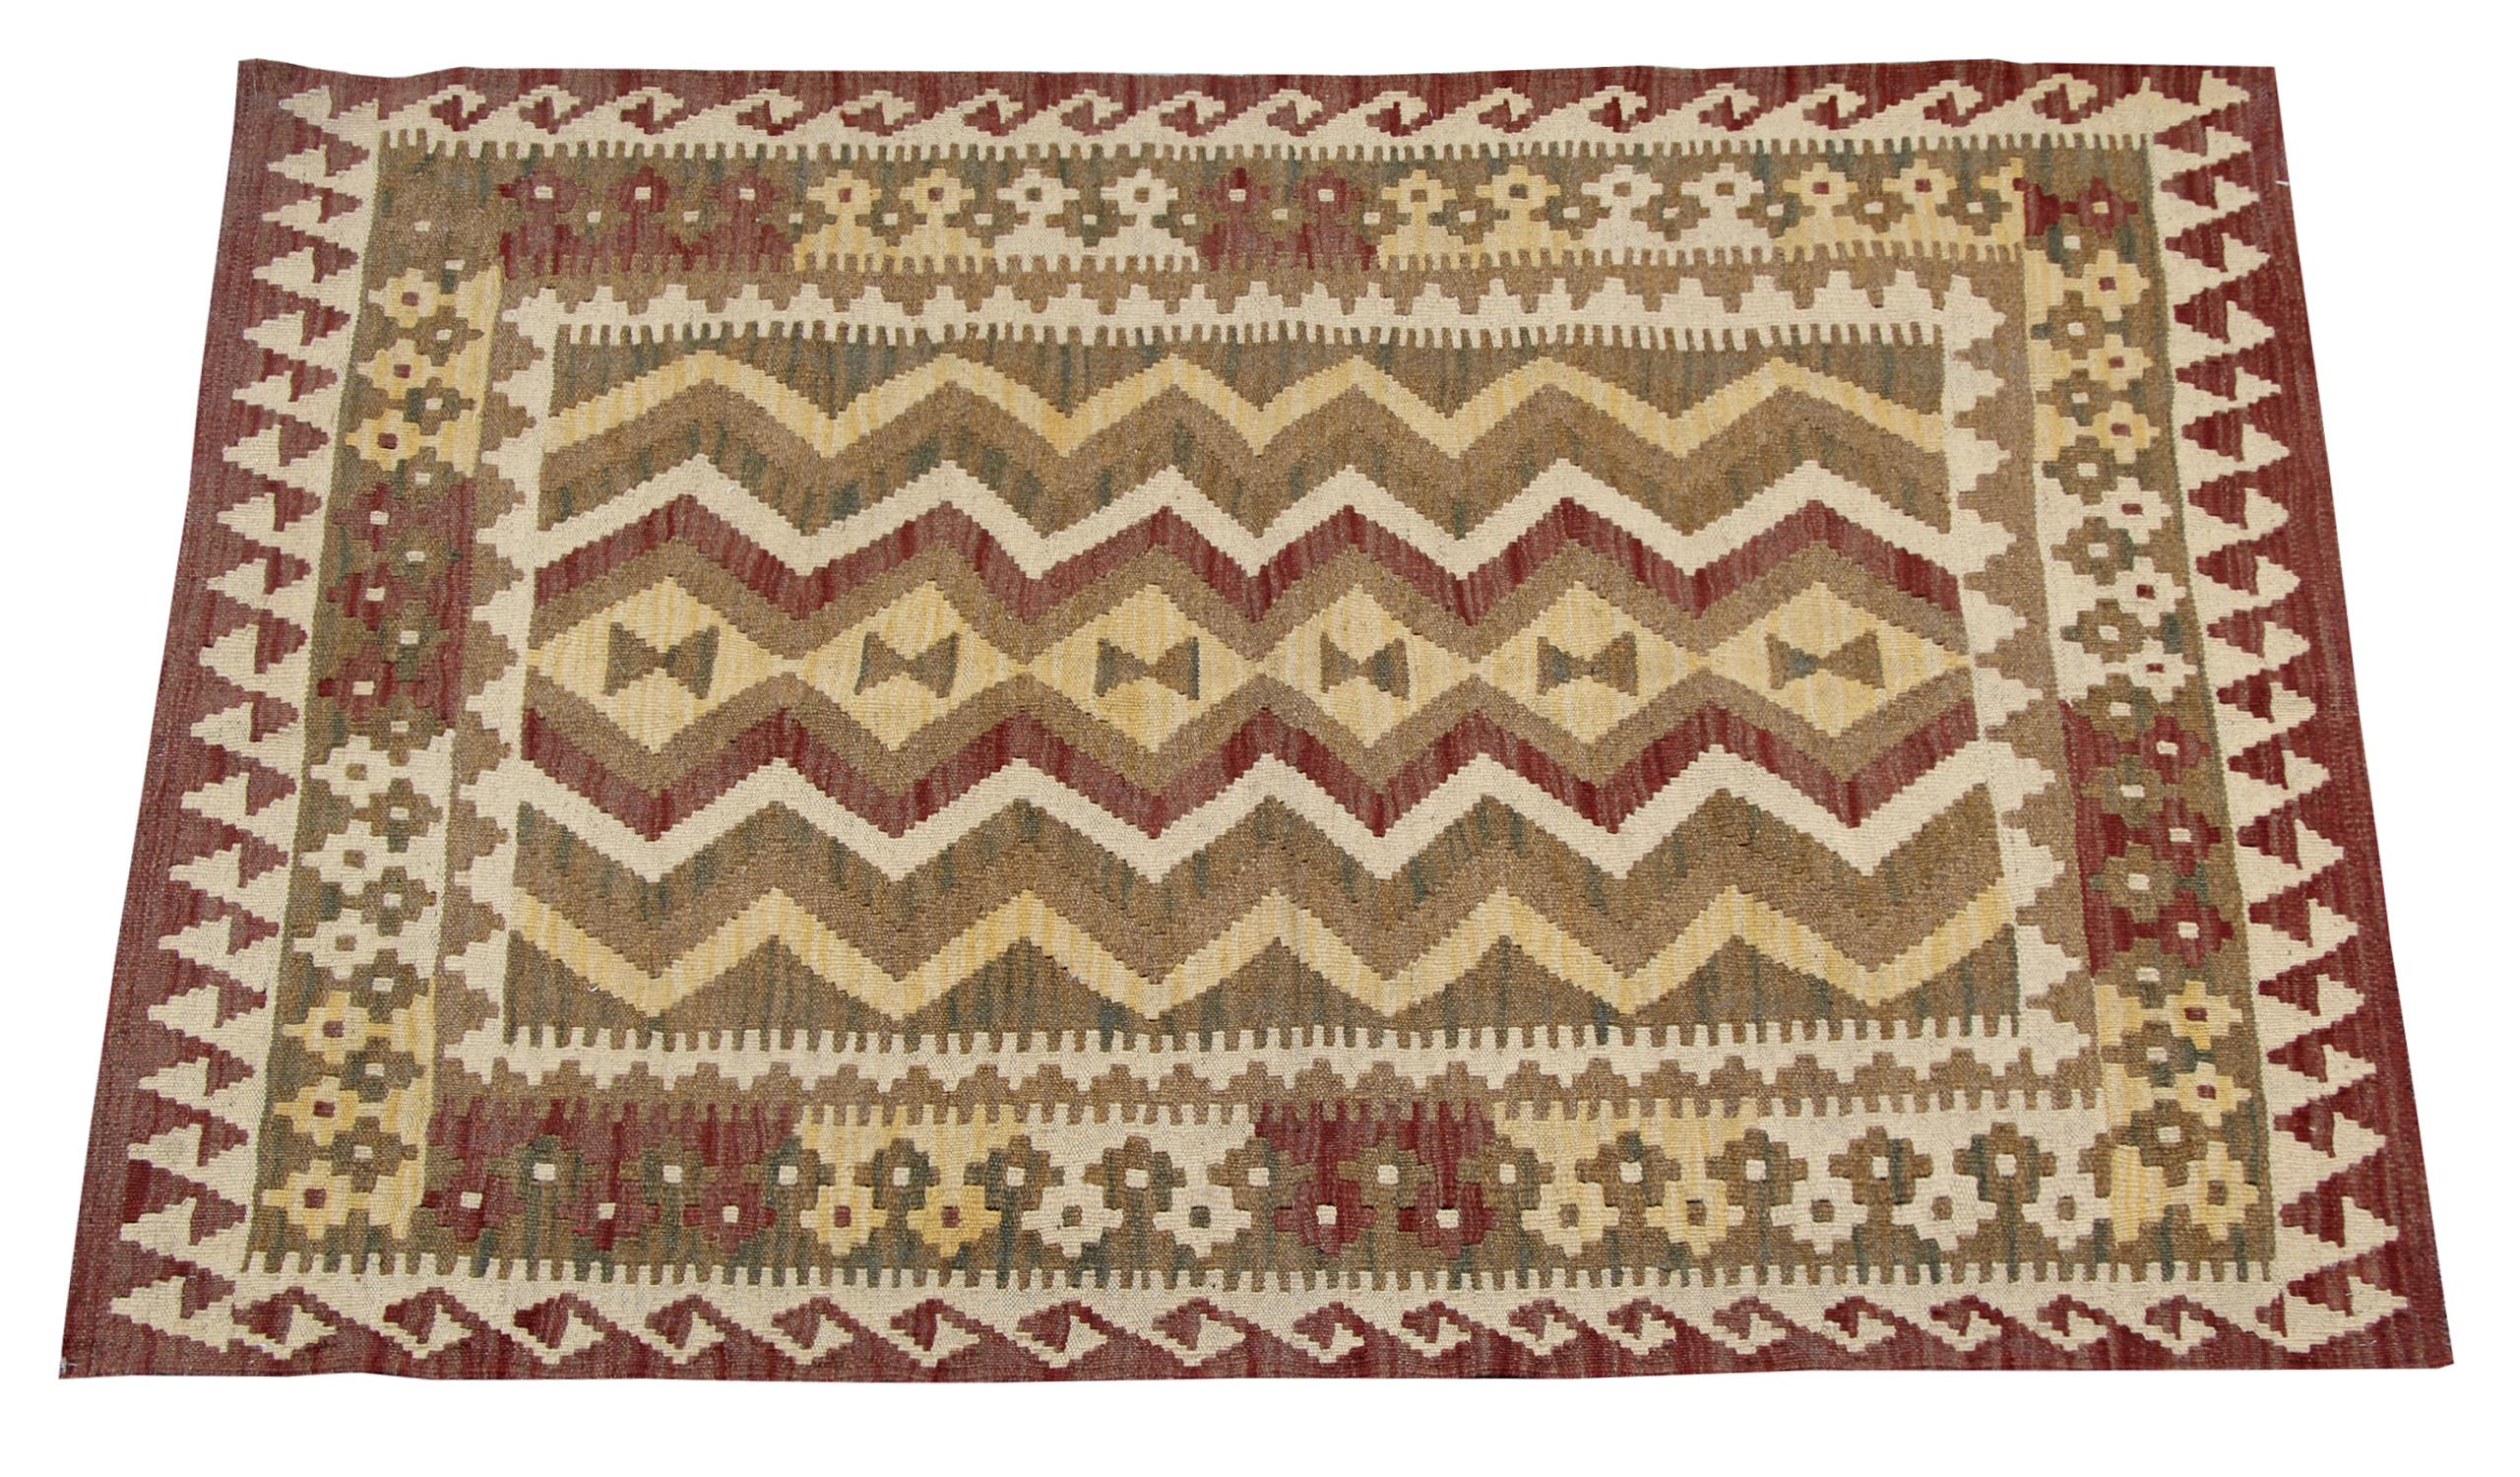 Afghan Tribal Kilim Rug, Geometric Vintage Carpet Cream Brown Flatweave Rug For Sale